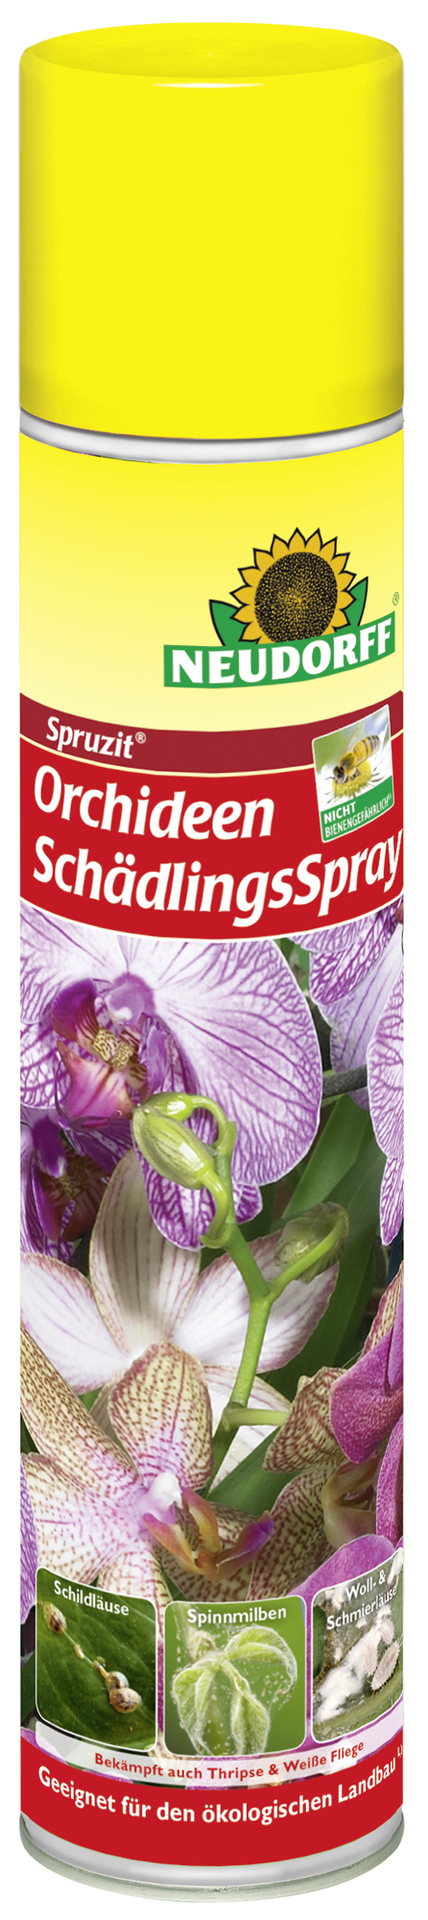 Spruzit Orchideen Schädlingsspray